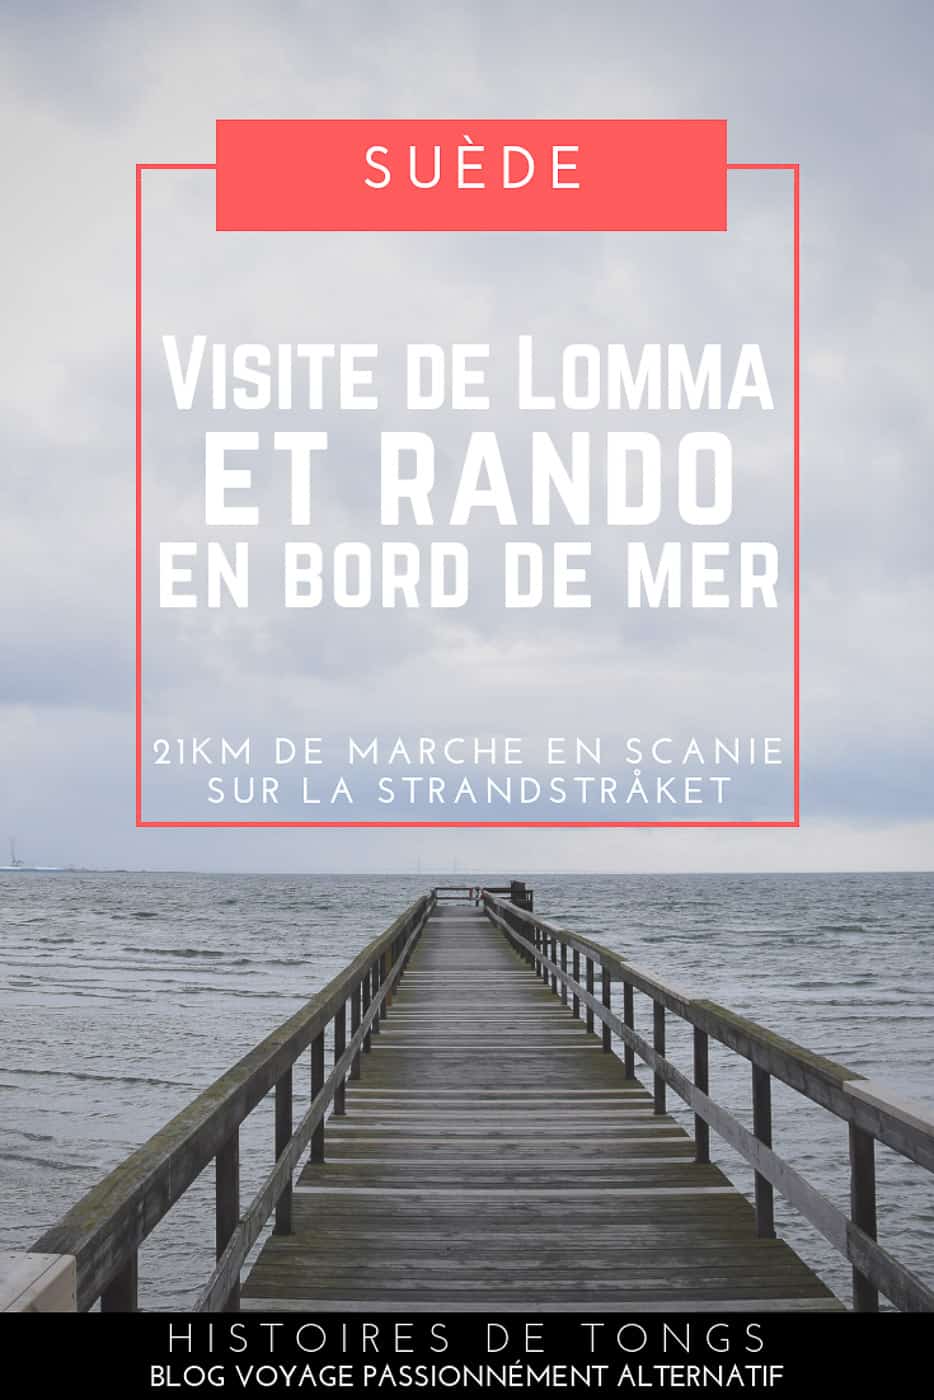 Visite de Lomma et Bjärred au Sud de la Suède (région de Skåne) et randonnée de 21km sur la Strandstråket, un magnifique sentier qui longe le bord de mer... | Histoires de tongs, le blog voyage passionnément alternatif